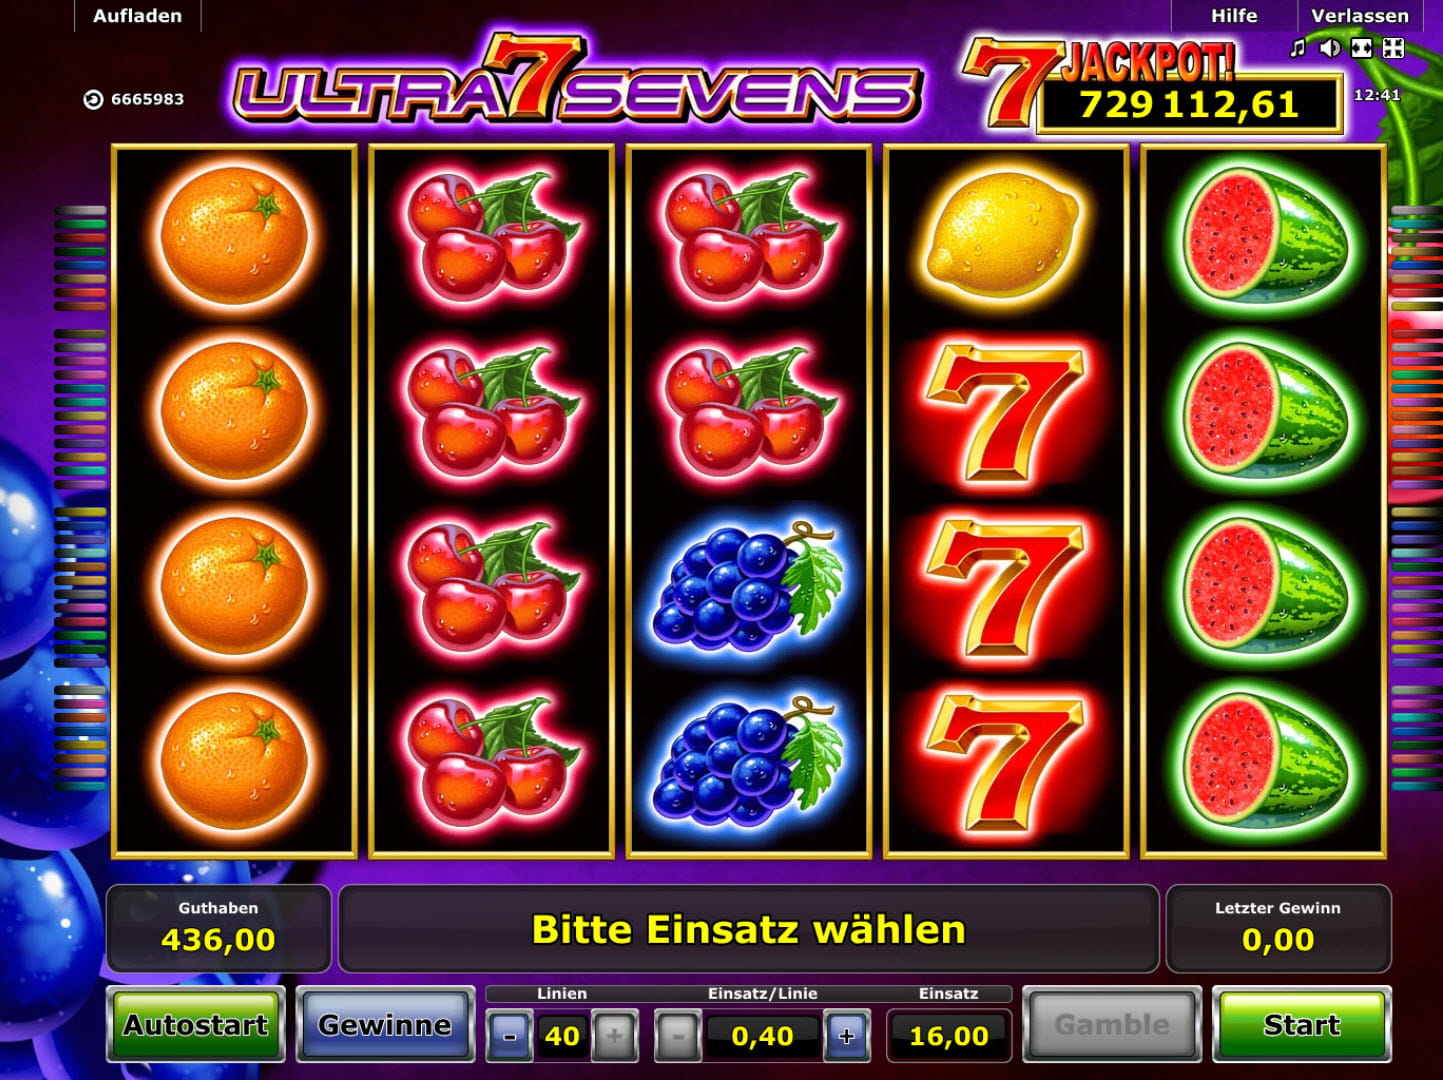 Der neue Jackpot Spielautomat Ultra Sevens im Überblick